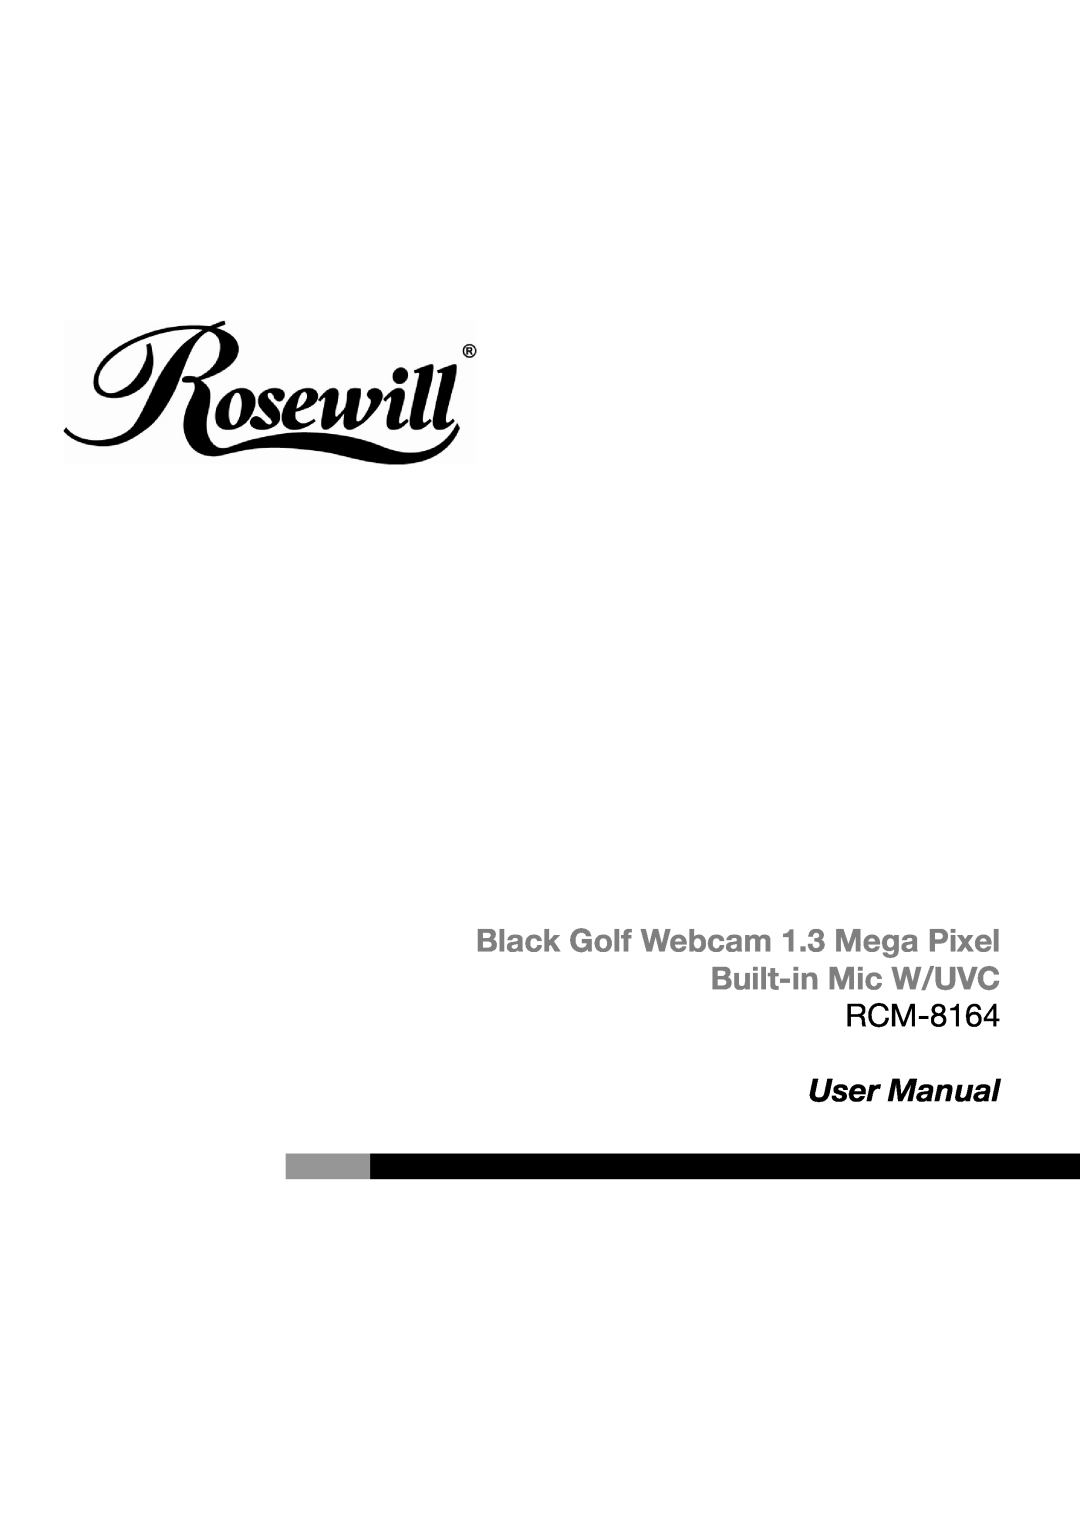 Rosewill RCM-8164 user manual Black Golf Webcam 1.3 Mega Pixel Built-in Mic W/UVC, User Manual 